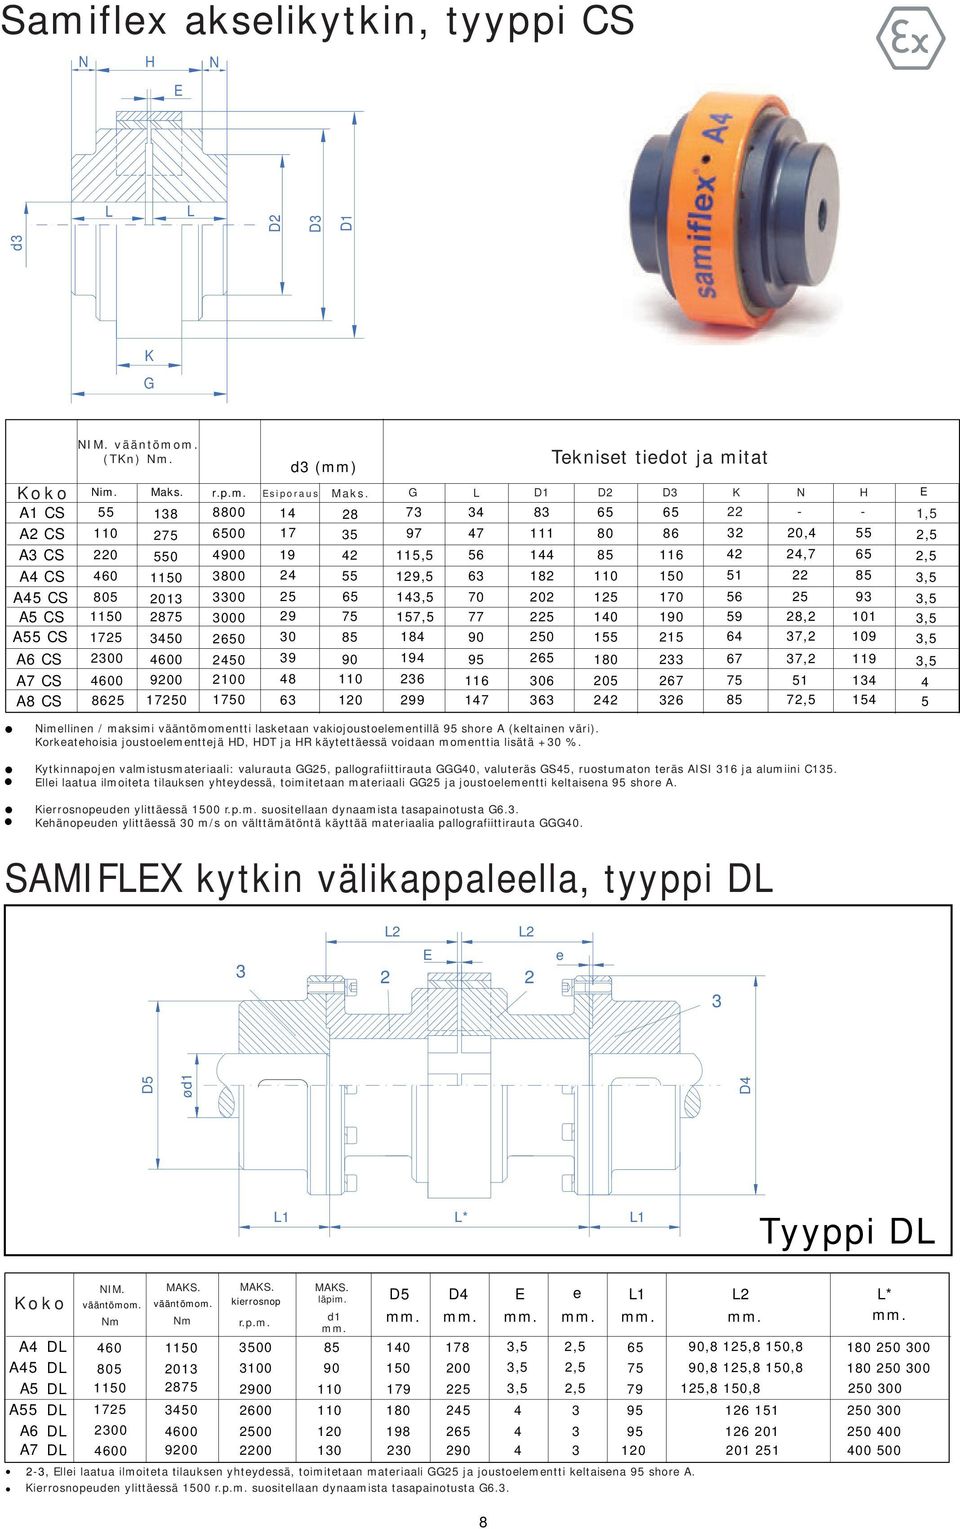 72, 1 SAMIFX kytkin välikappaleella, tyyppi D 2 2 2 2 e D ø d 1 D d K NIM. (TKn). Nimellinen / maksimi vääntömomentti lasketaan vakiojoustoelementillä 9 shore A (keltainen väri).